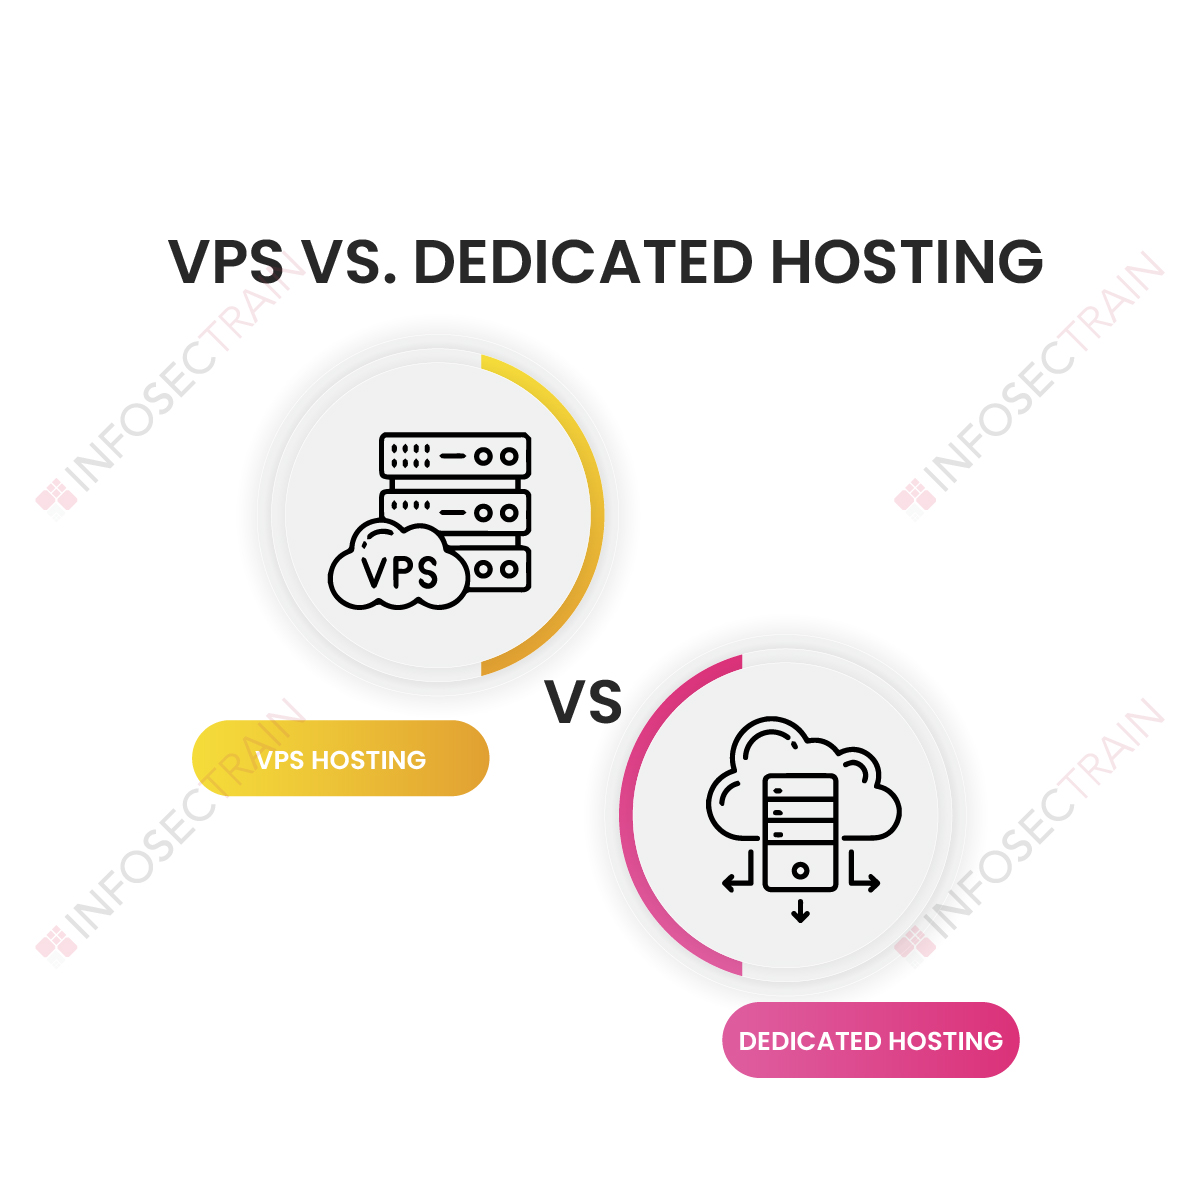 VPS vs. Dedicated Hosting